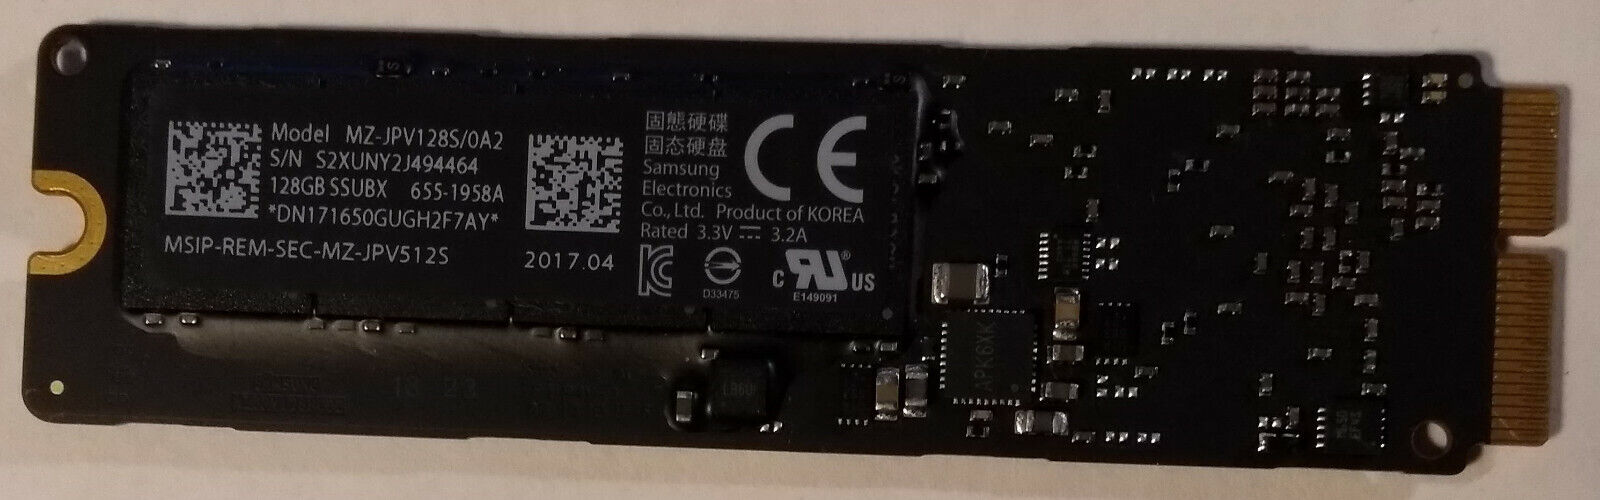 Apple Samsung 128GB 655-1857B MZ-JPV128R/0A2 SSD Solid State Drive A1465 A1466